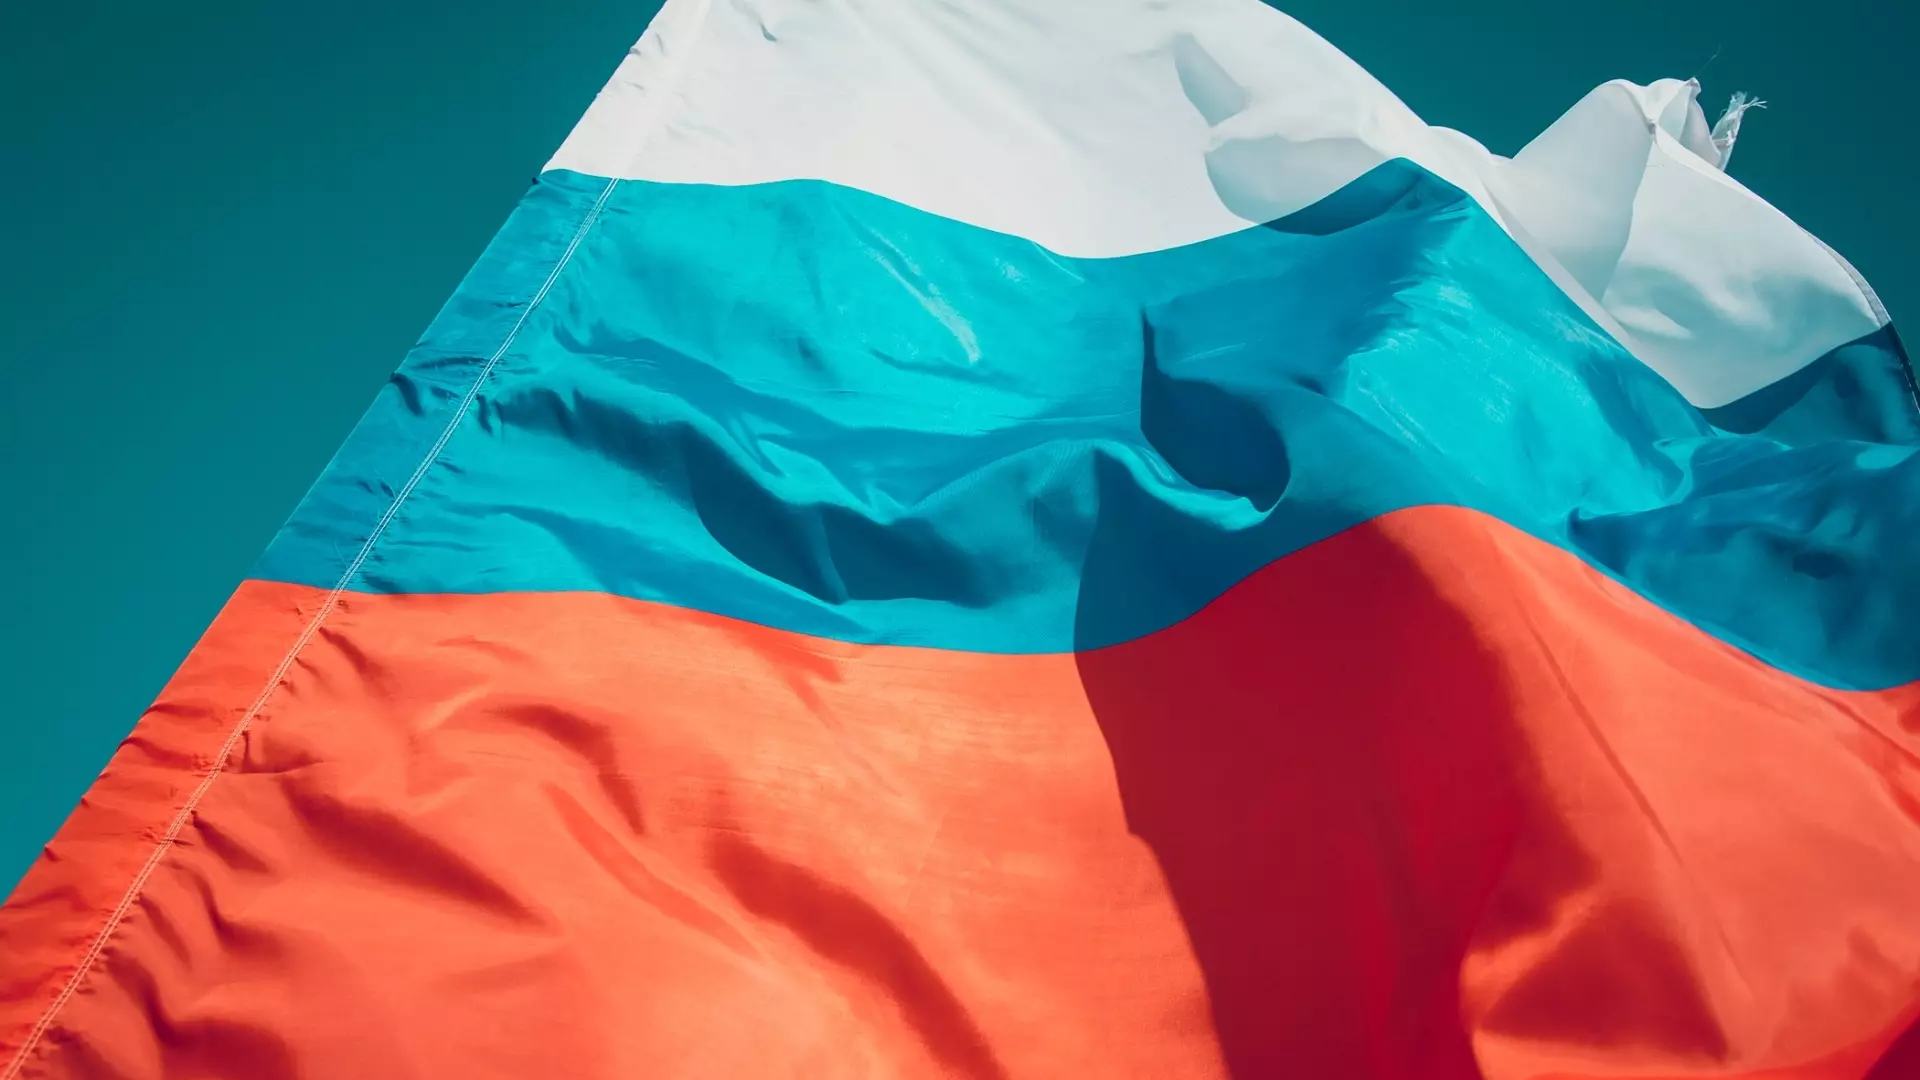 Госдума обязала вывешивать флаг России в вузах и детских садах